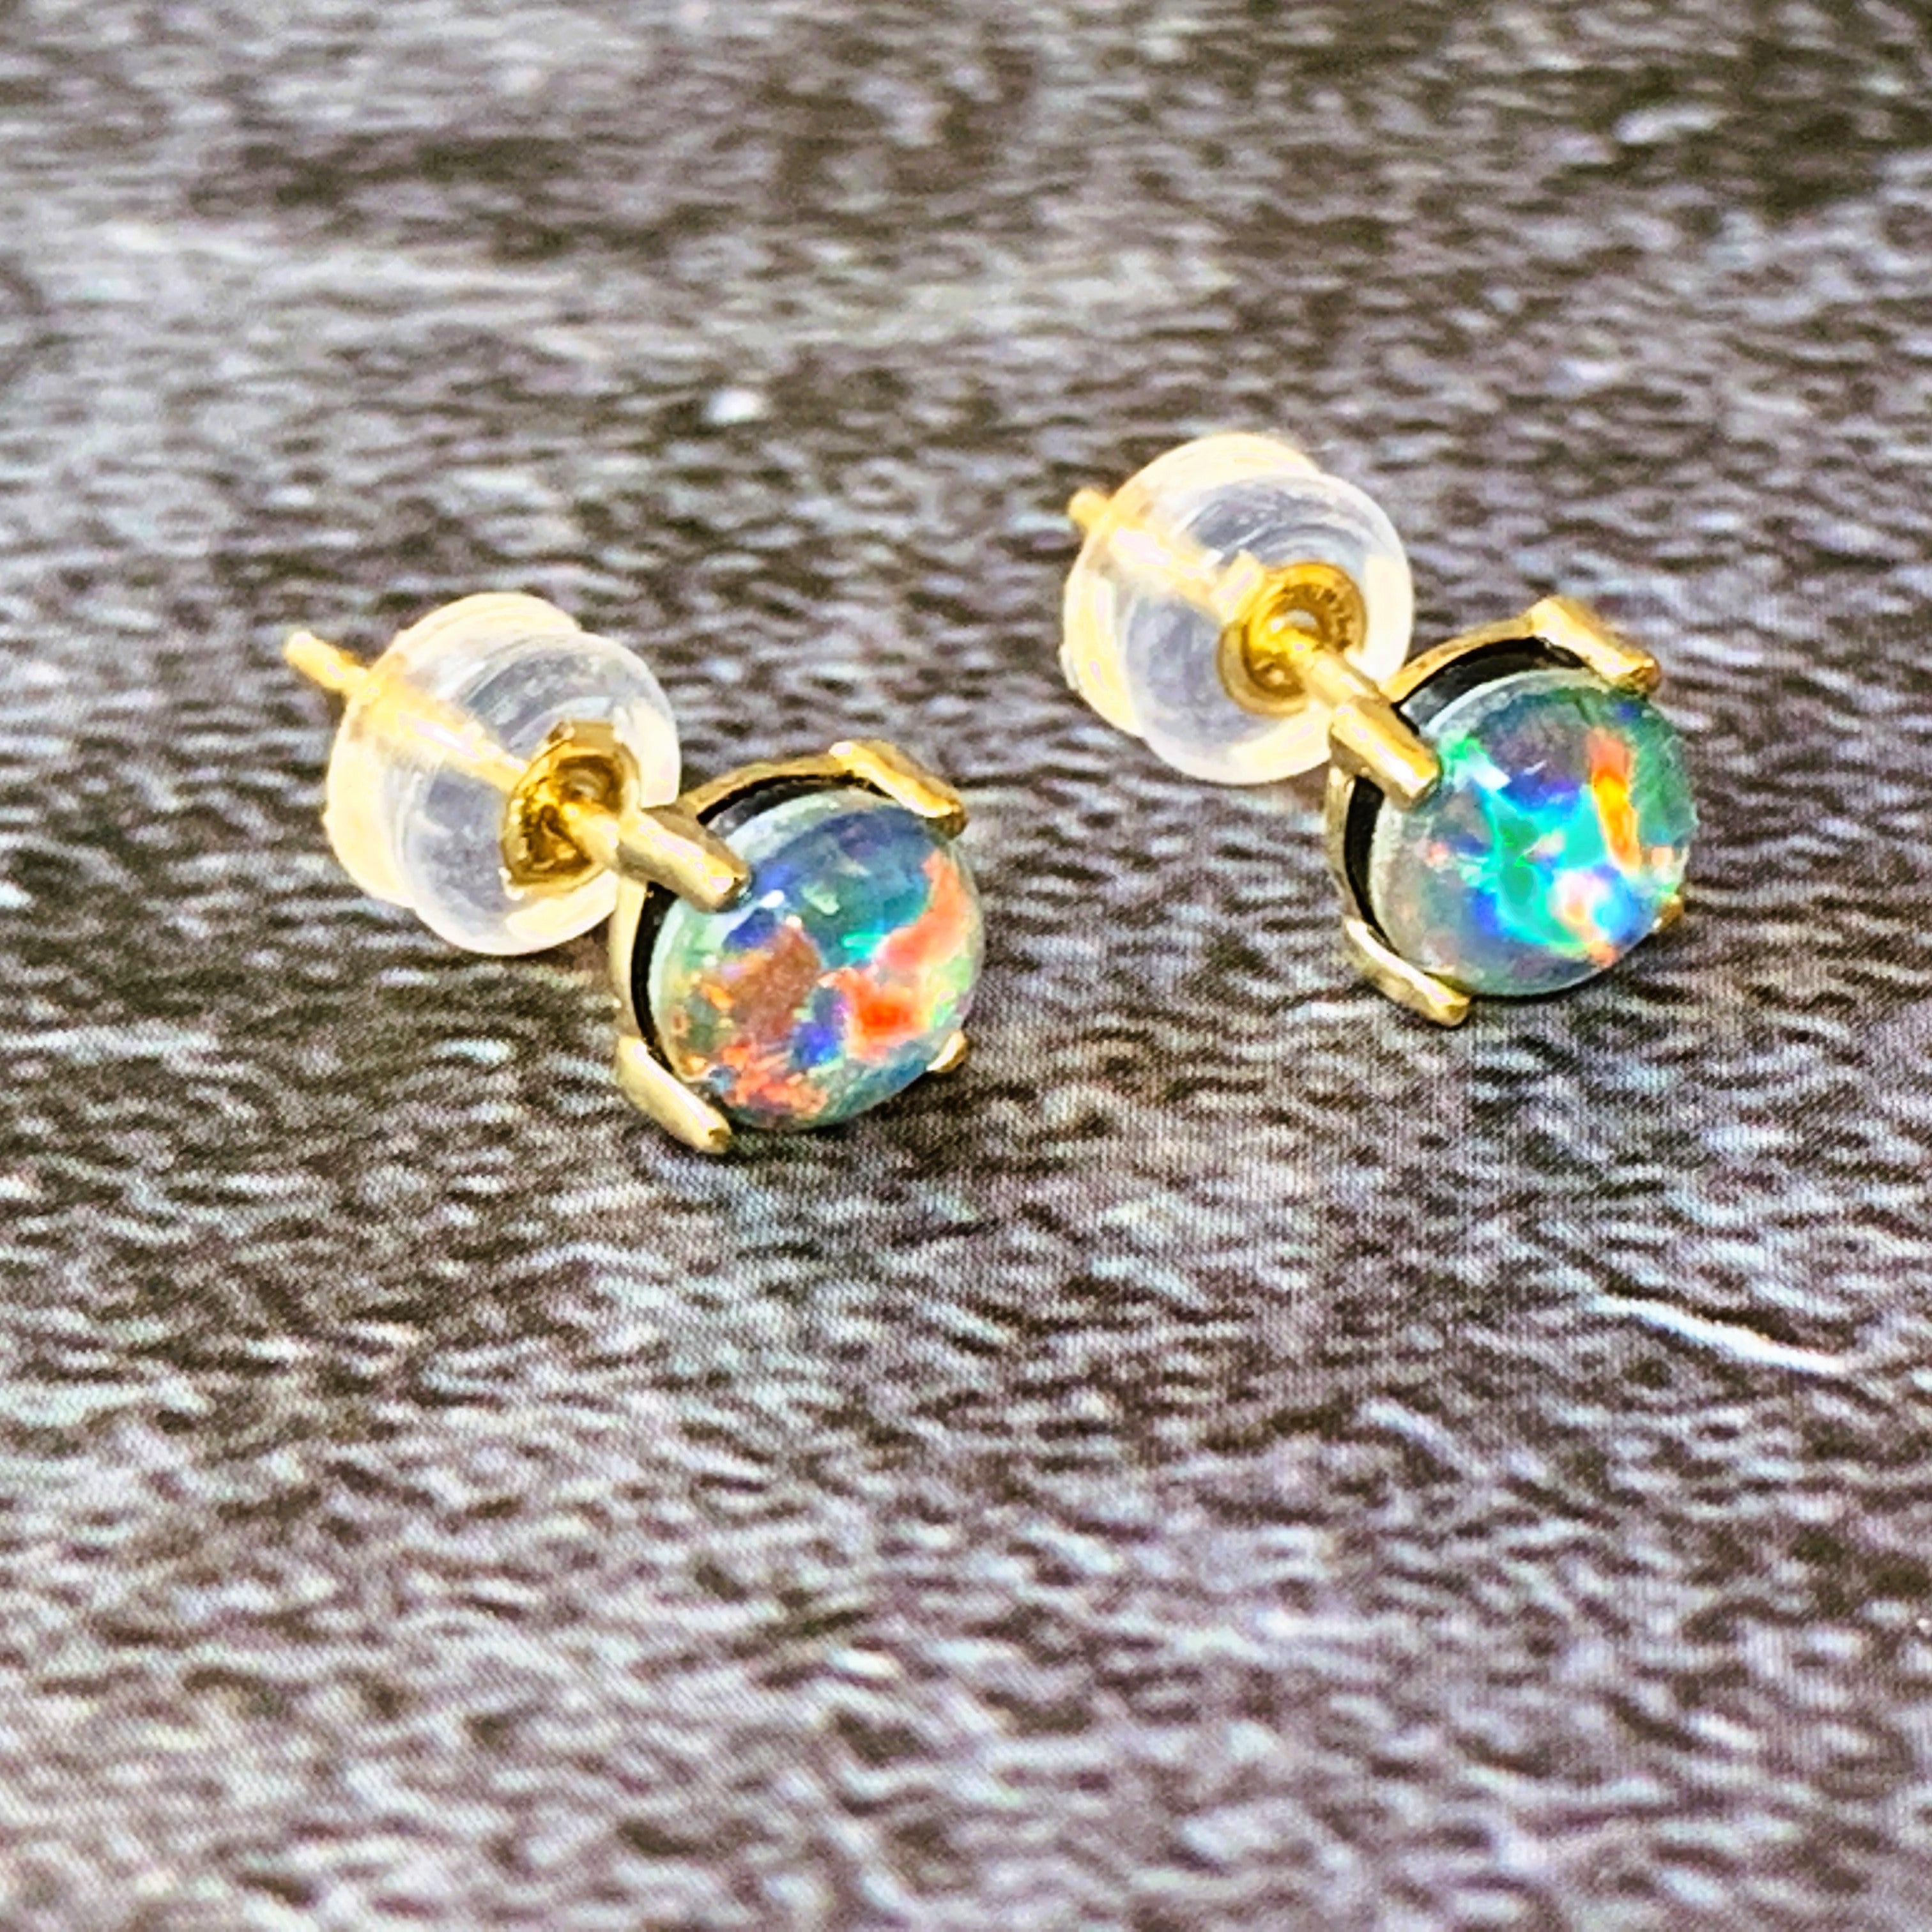 9kt Yellow Gold Opal triplet 5mm studs - Masterpiece Jewellery Opal & Gems Sydney Australia | Online Shop